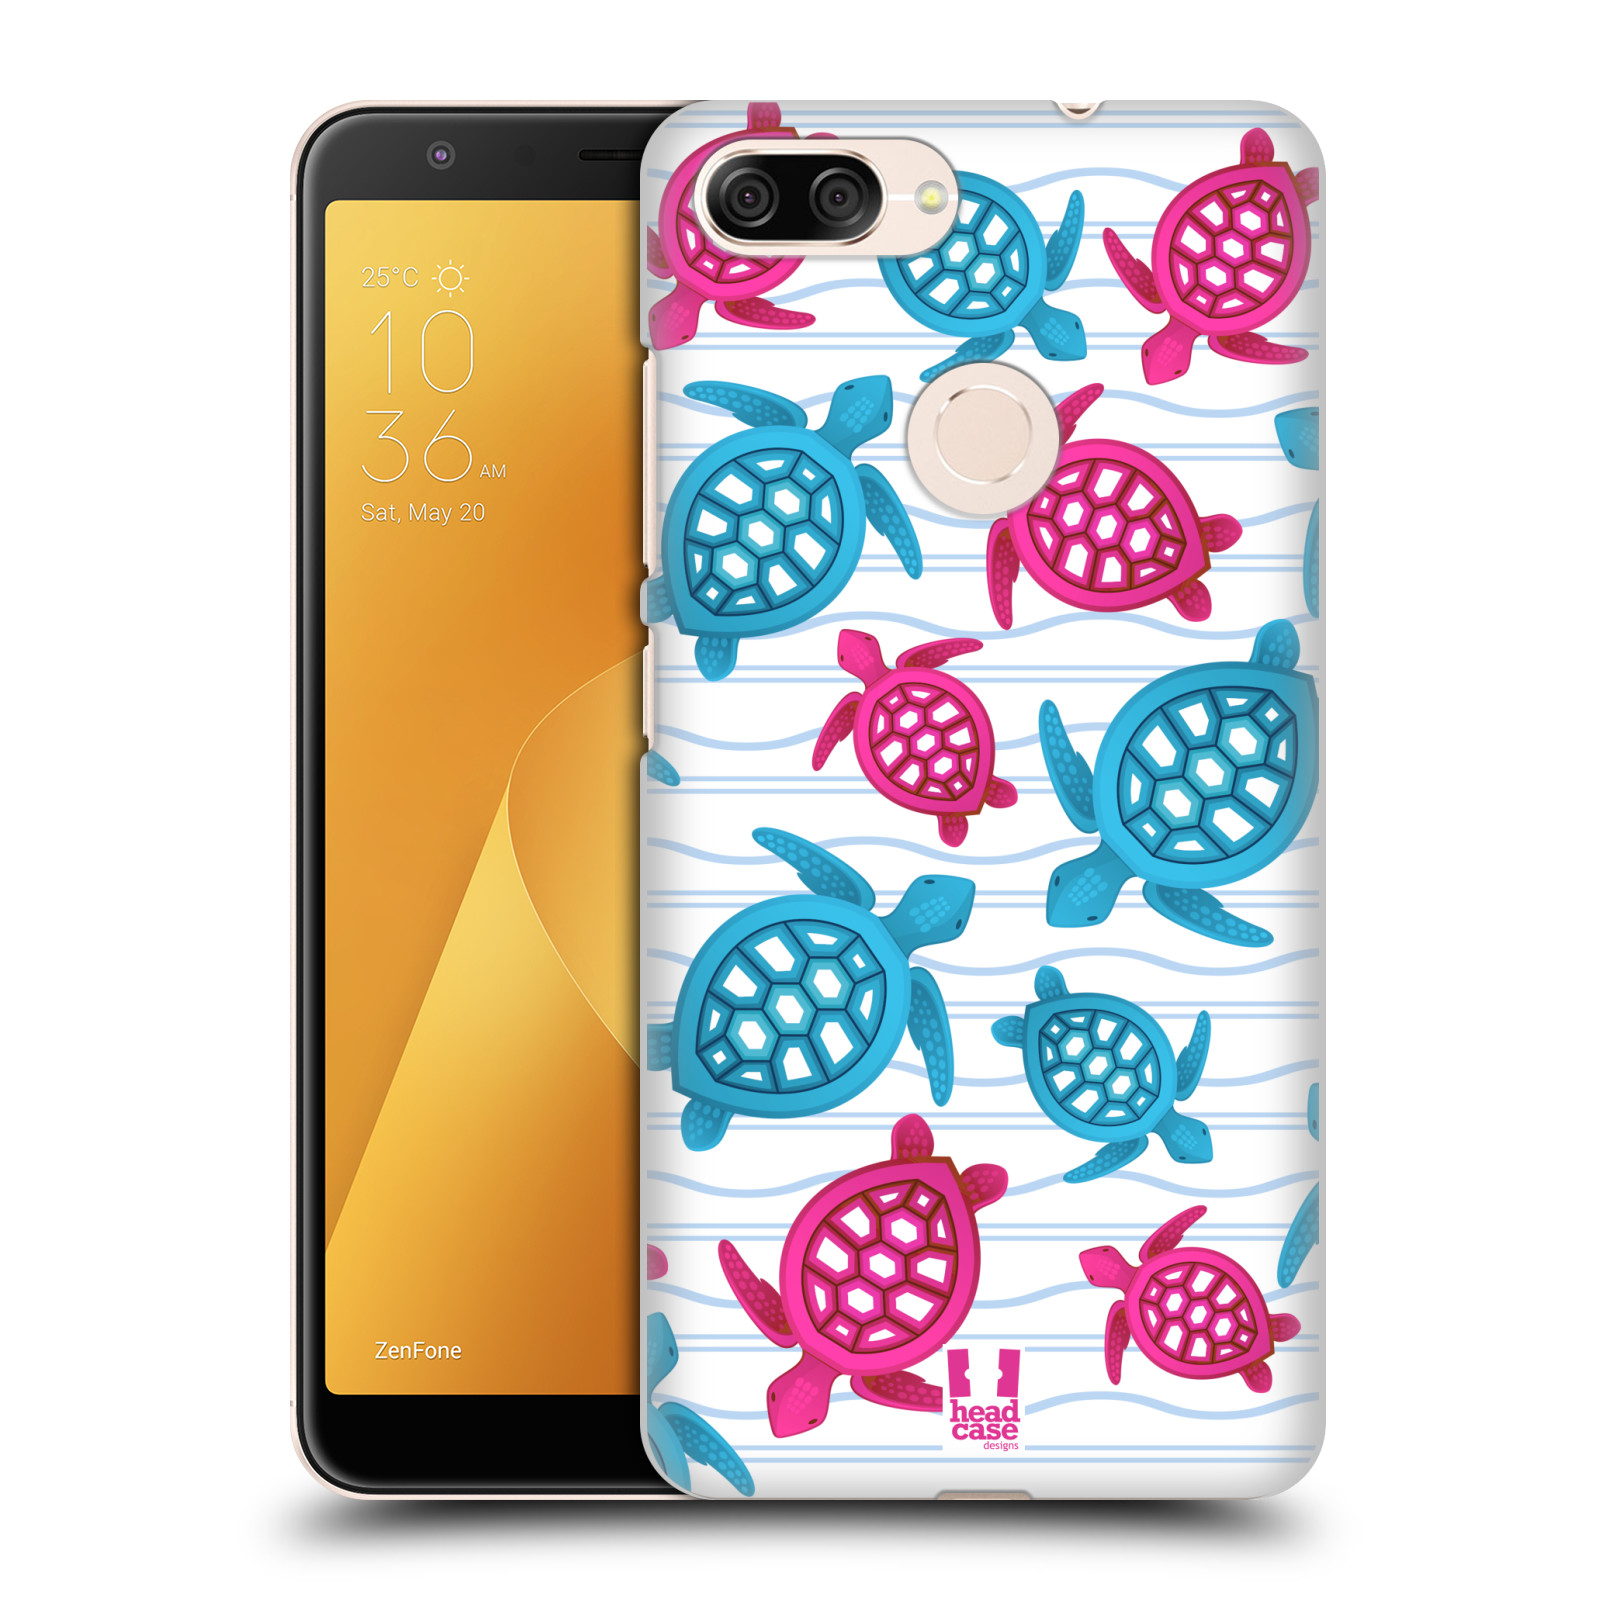 Zadní obal pro mobil Asus Zenfone Max Plus (M1) - HEAD CASE - kreslený mořský vzor želvičky